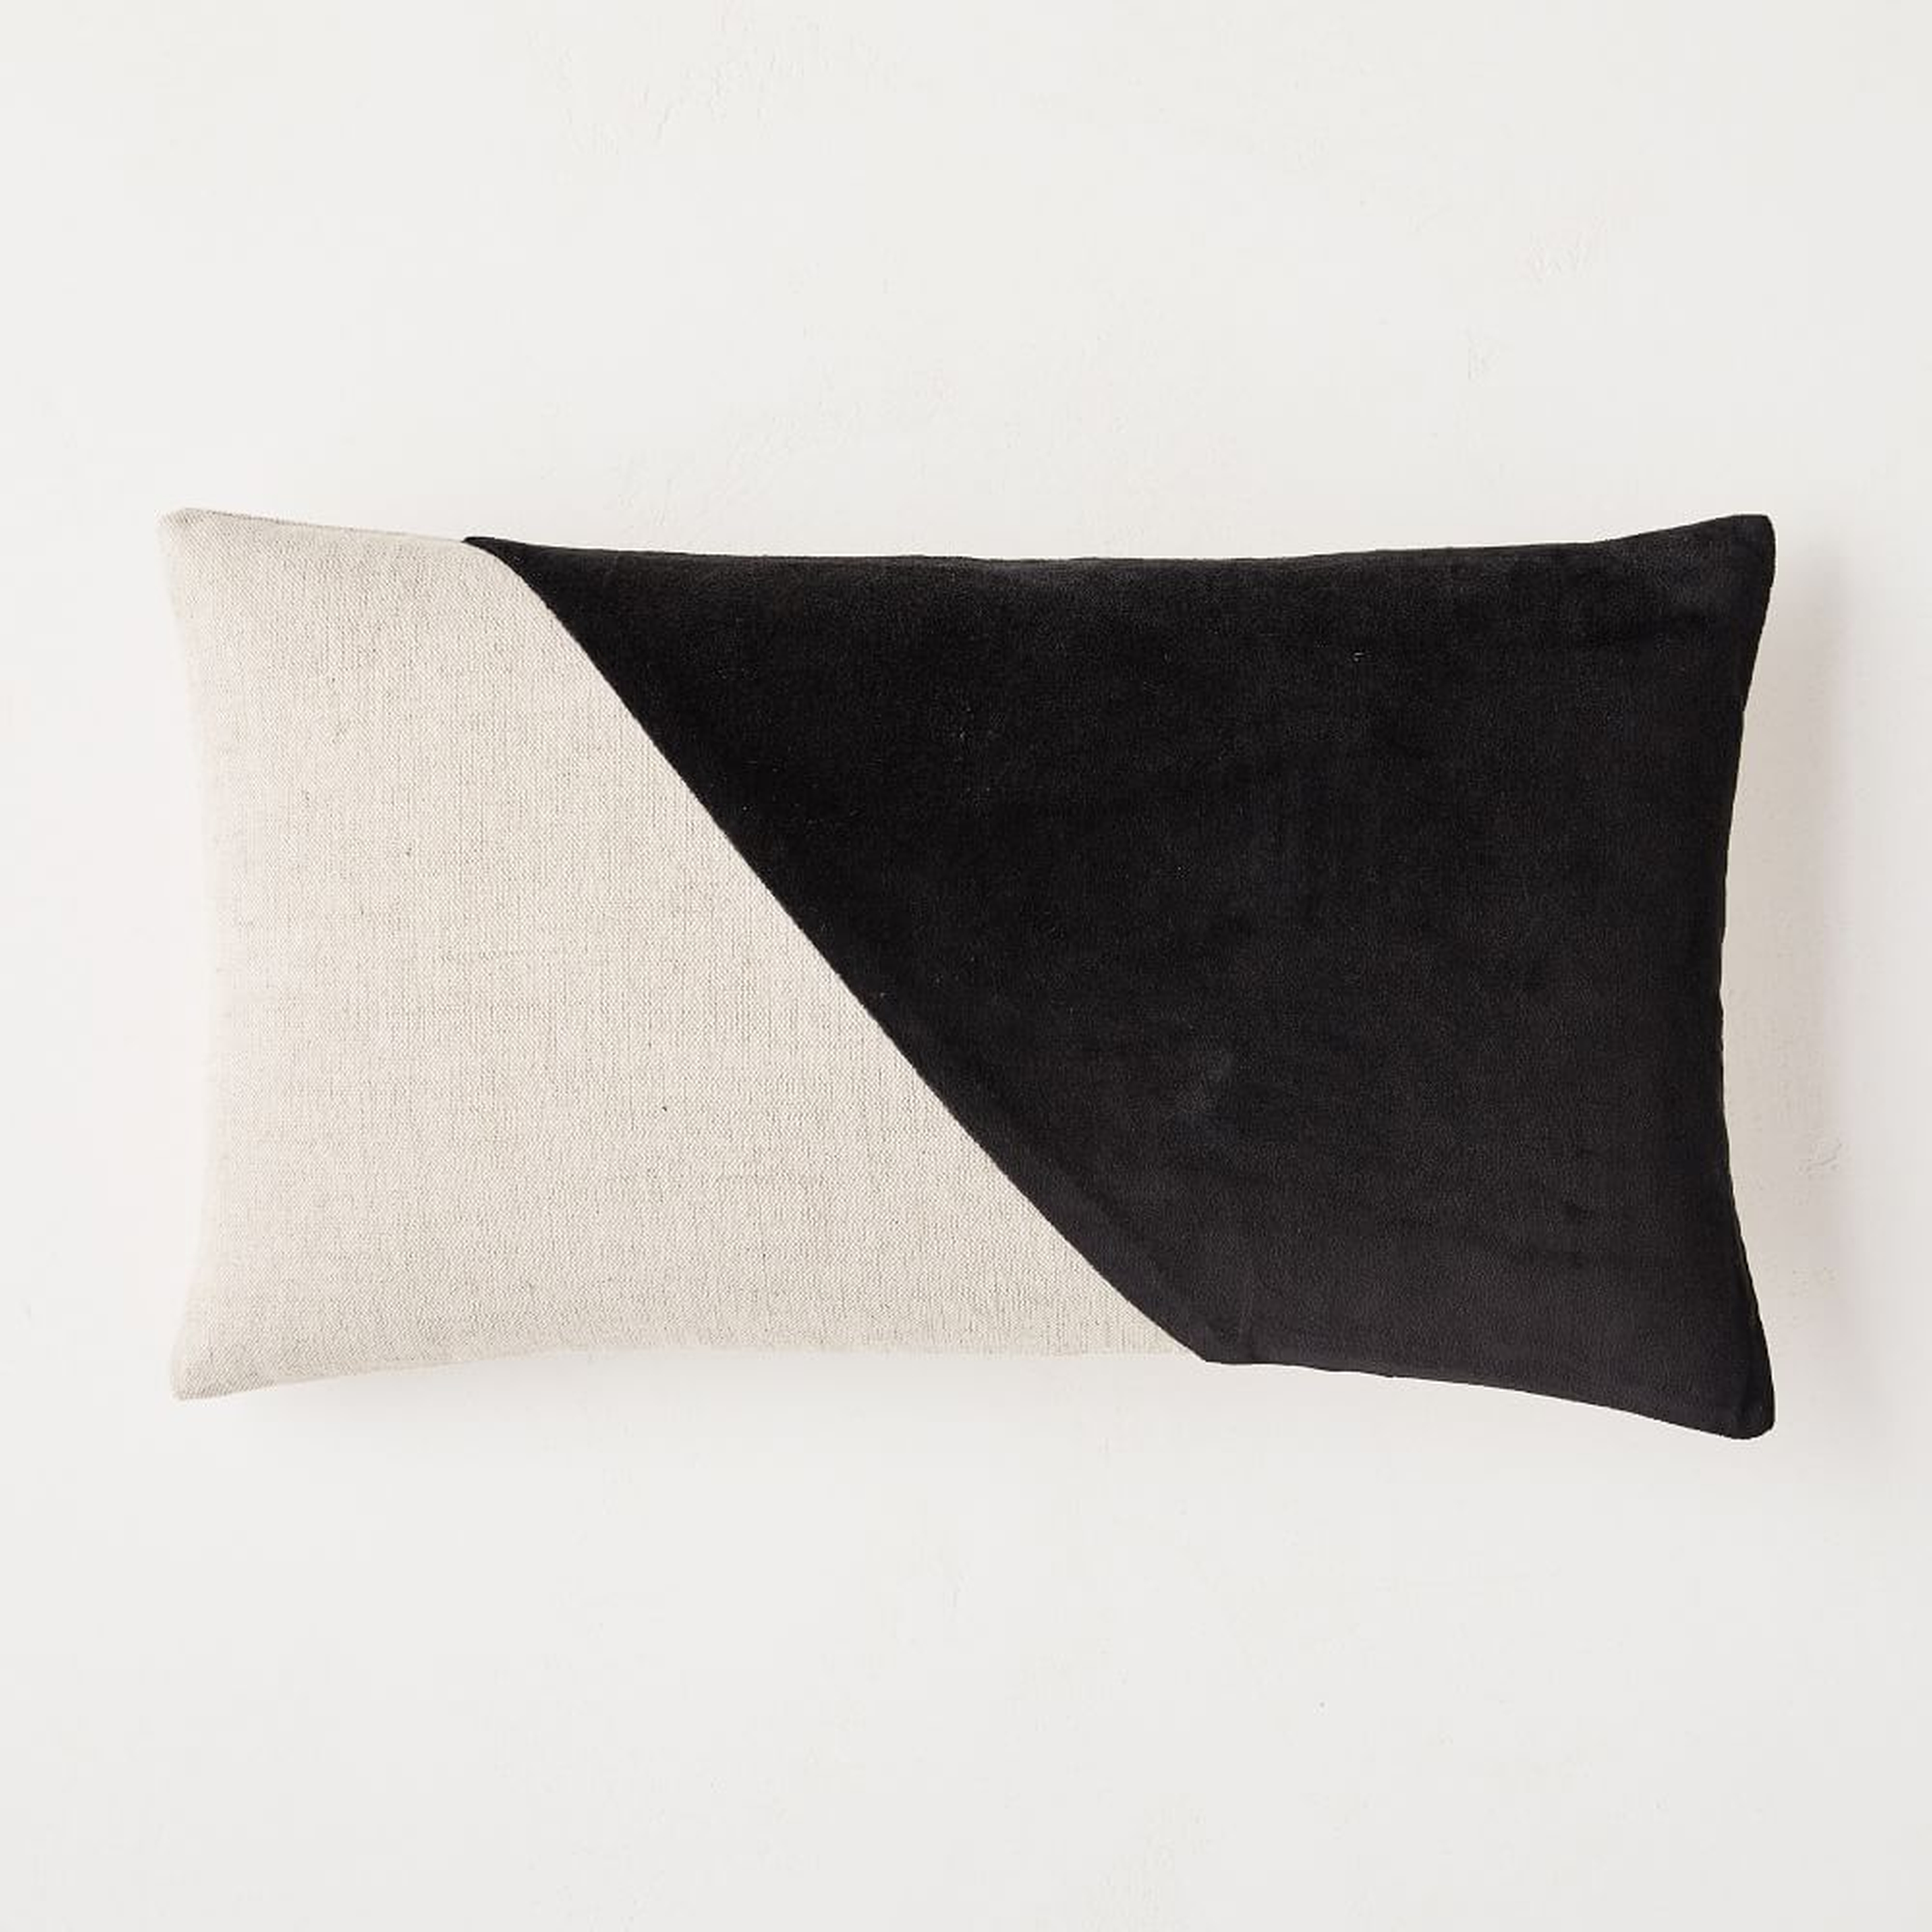 Cotton Linen + Velvet Corners Pillow Cover, 12"x21", Black - West Elm